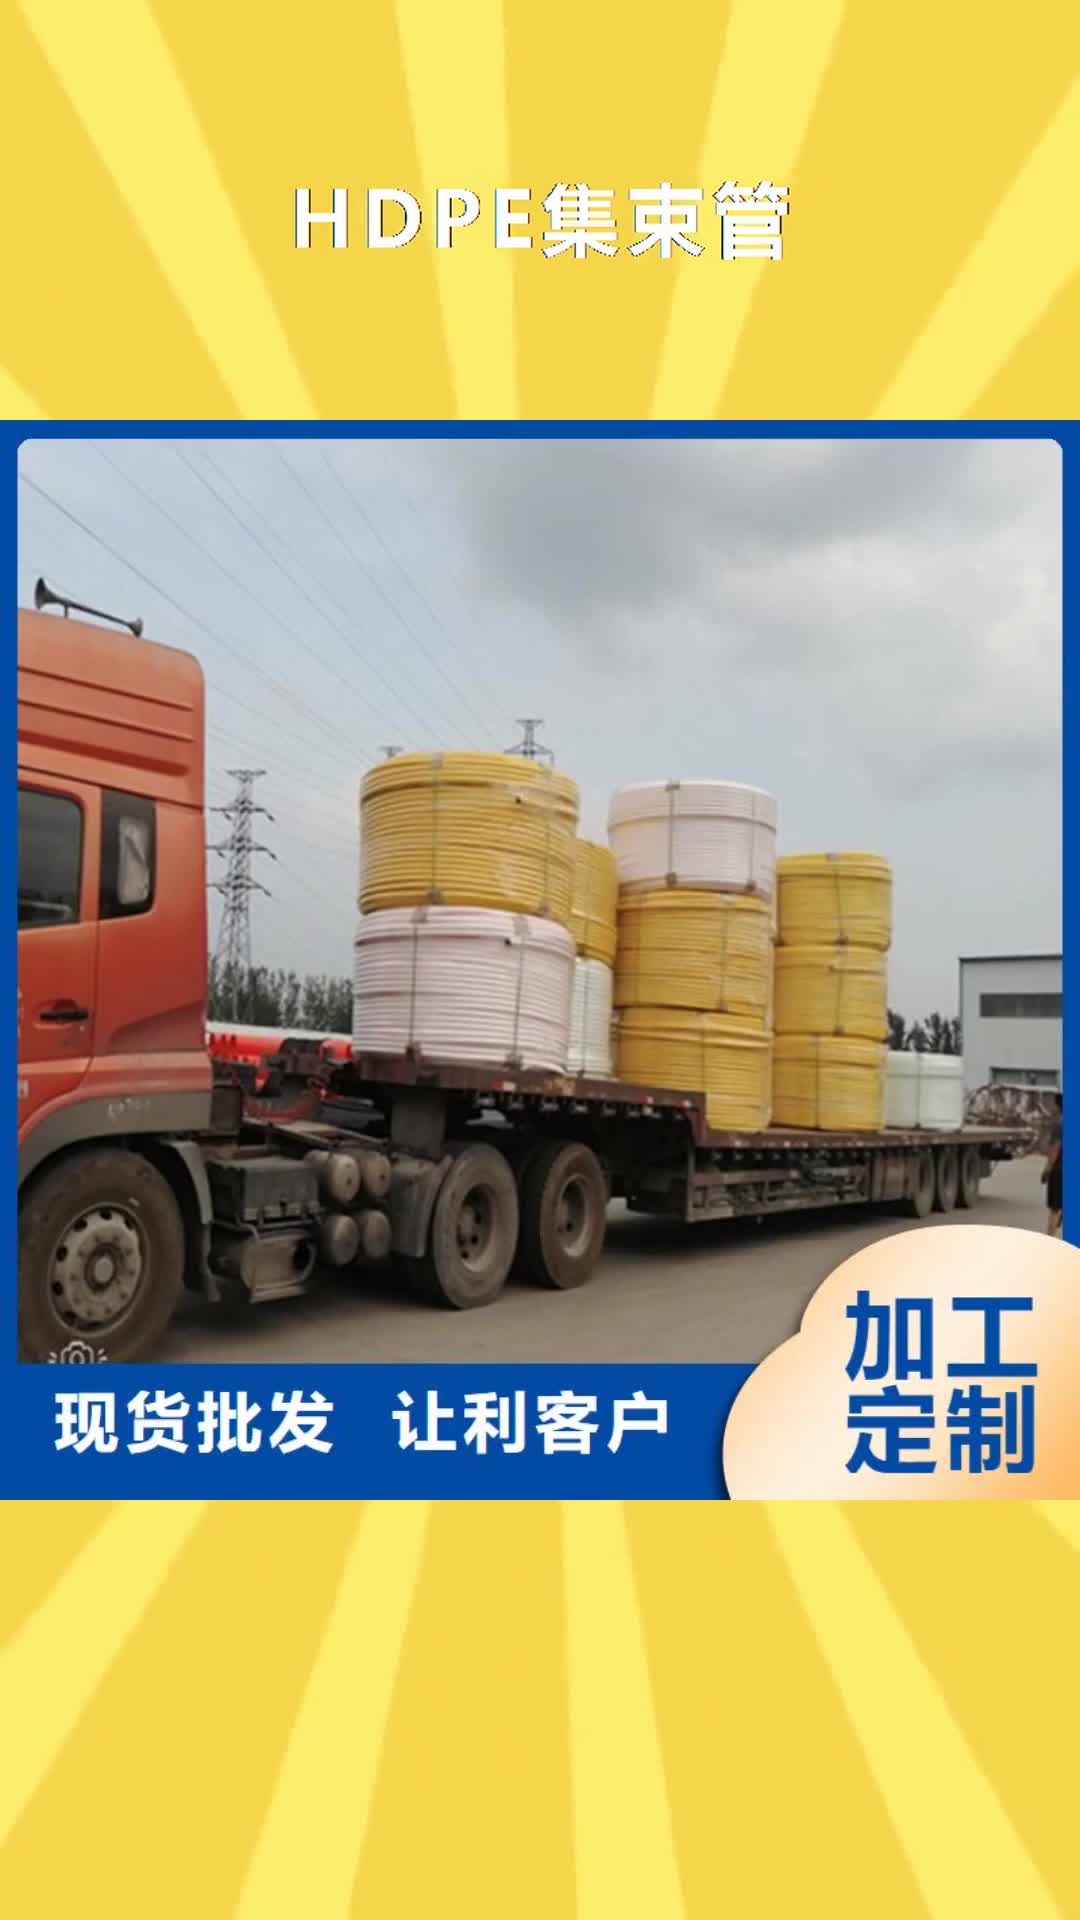 呼伦贝尔【HDPE集束管】,32硅芯管厂家现货供应